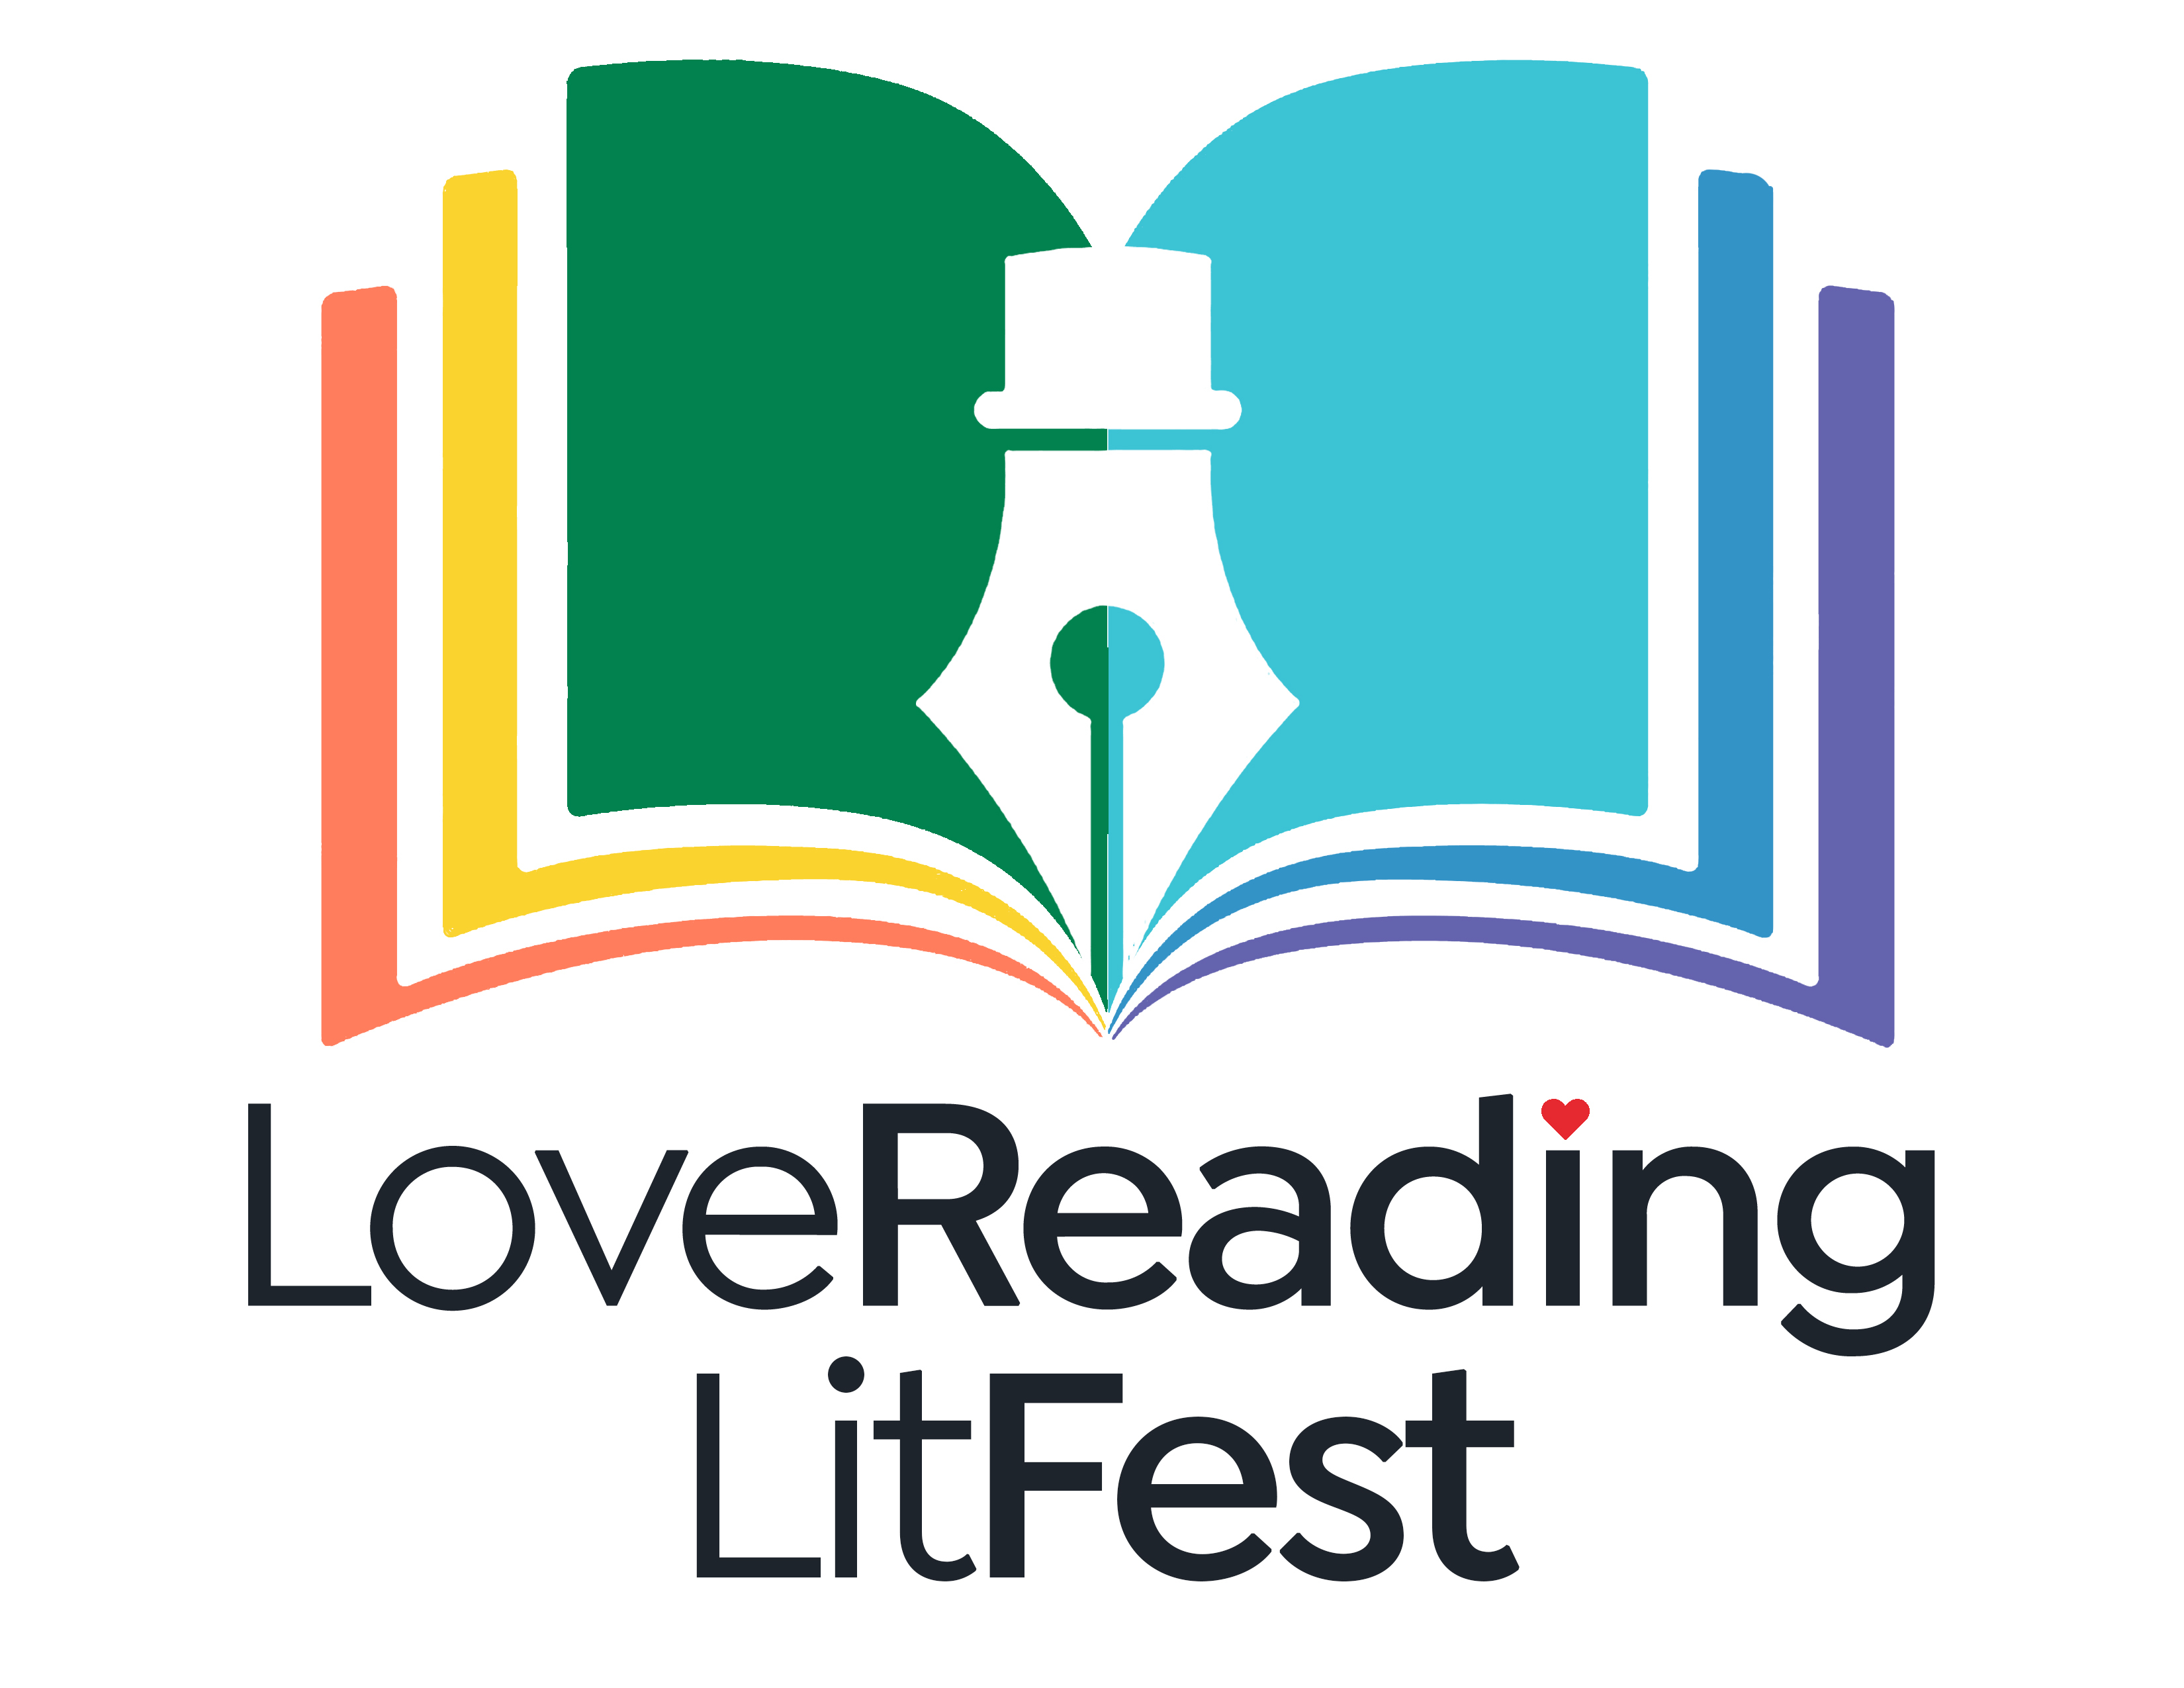 lovereading lit fest logo